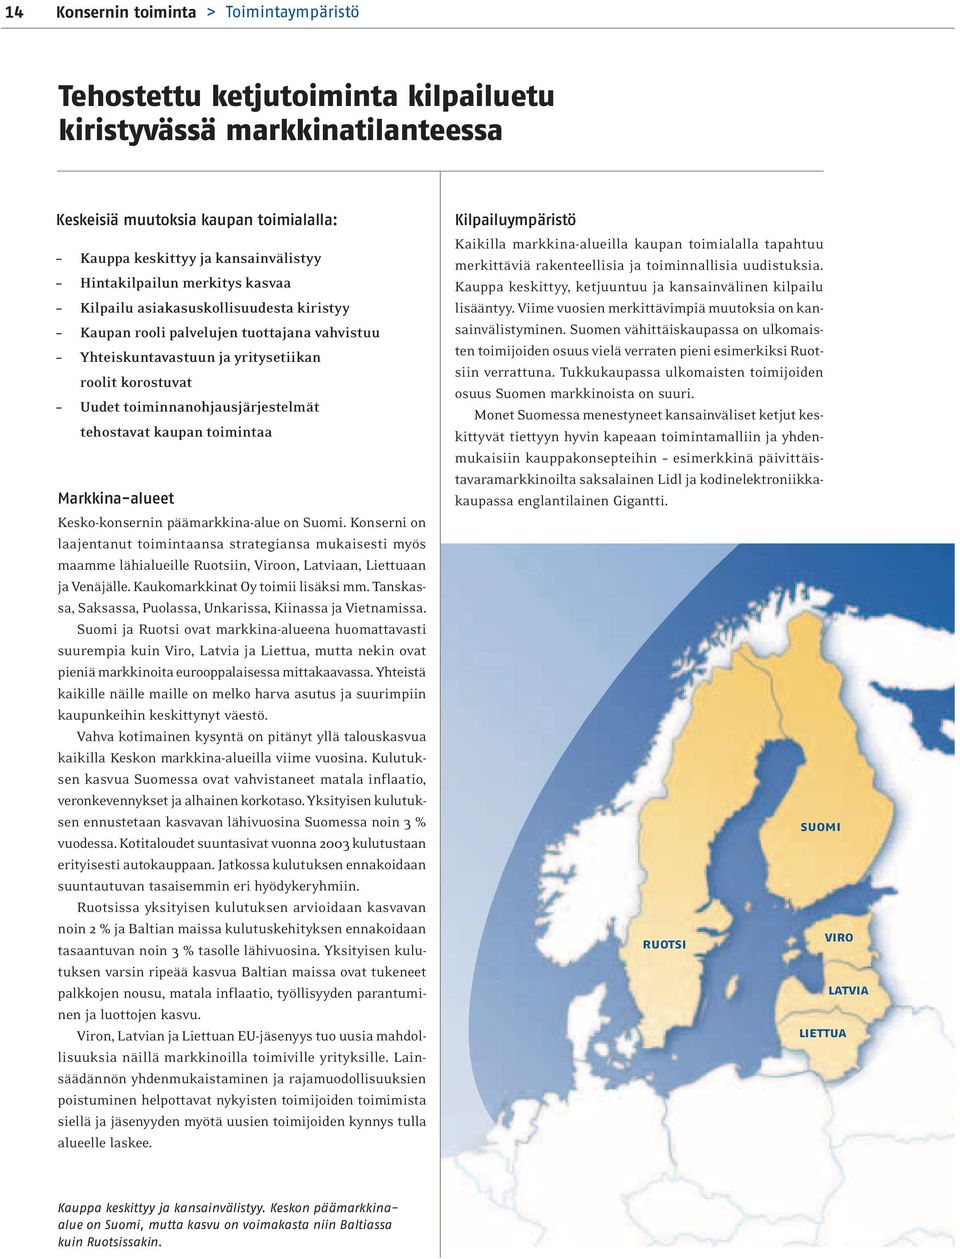 toiminnanohjausjärjestelmät tehostavat kaupan toimintaa Markkina-alueet Kesko-konsernin päämarkkina-alue on Suomi.